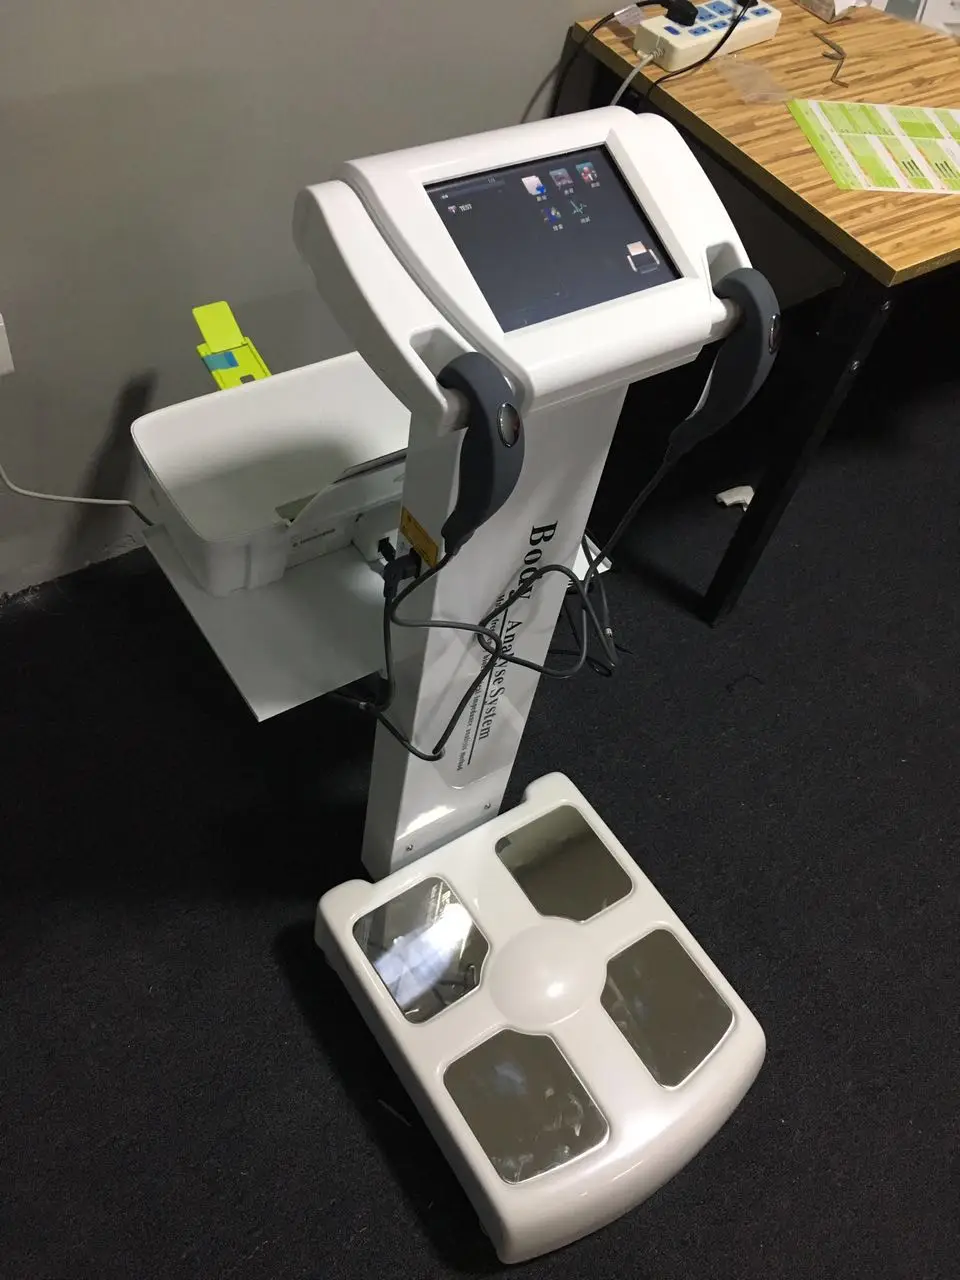 Новое поколение элементов человеческого тела анализатор жировых отложений тест вес Корпус аппарата контроля доступа по с принтером